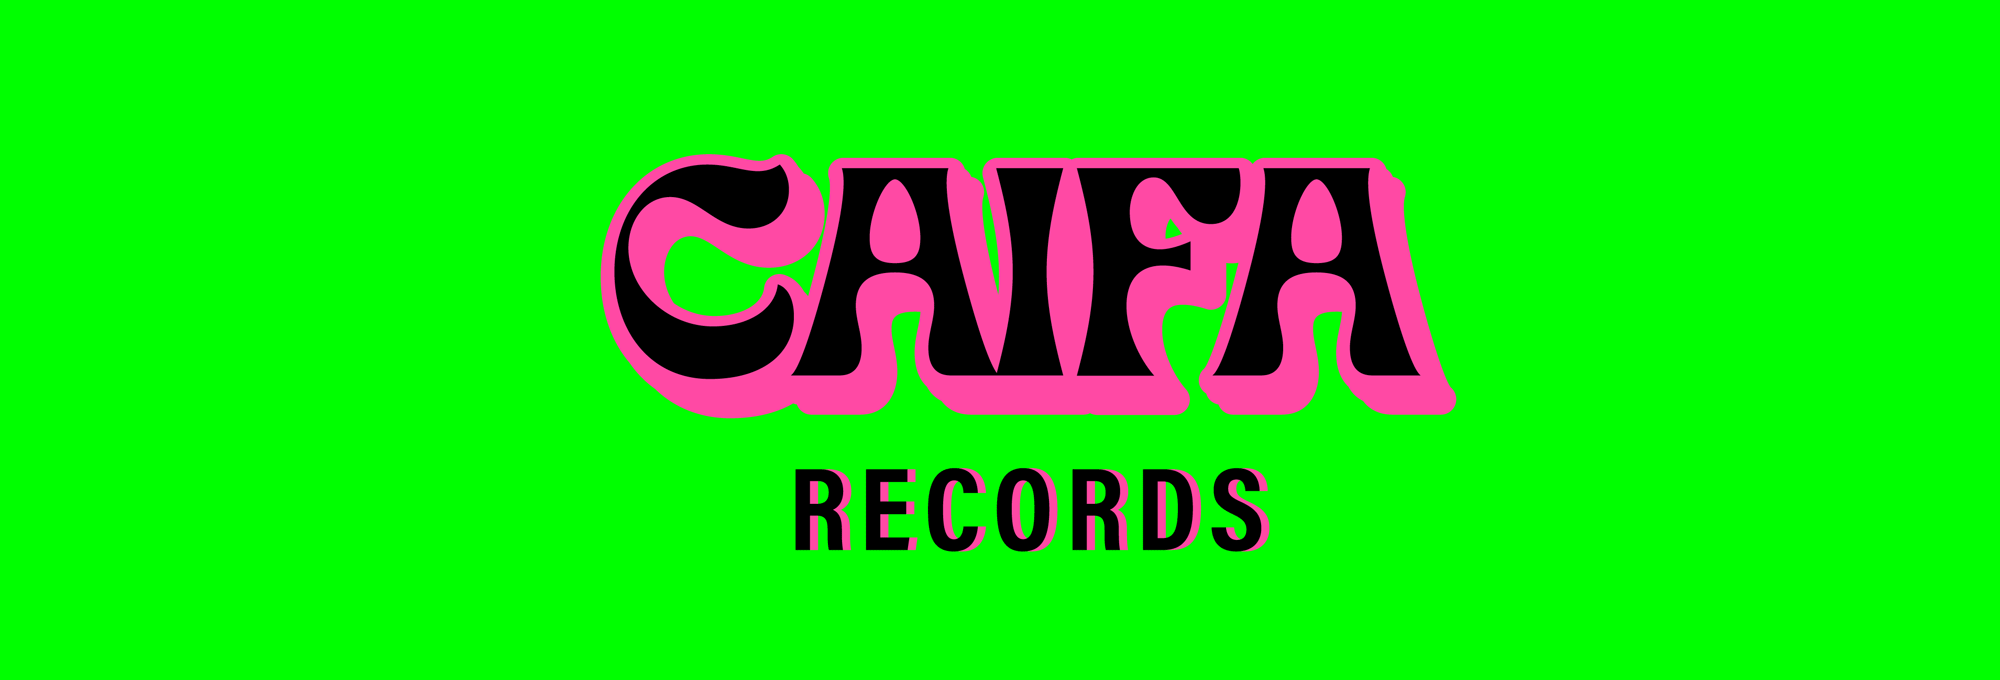 caifa-records-logos-07